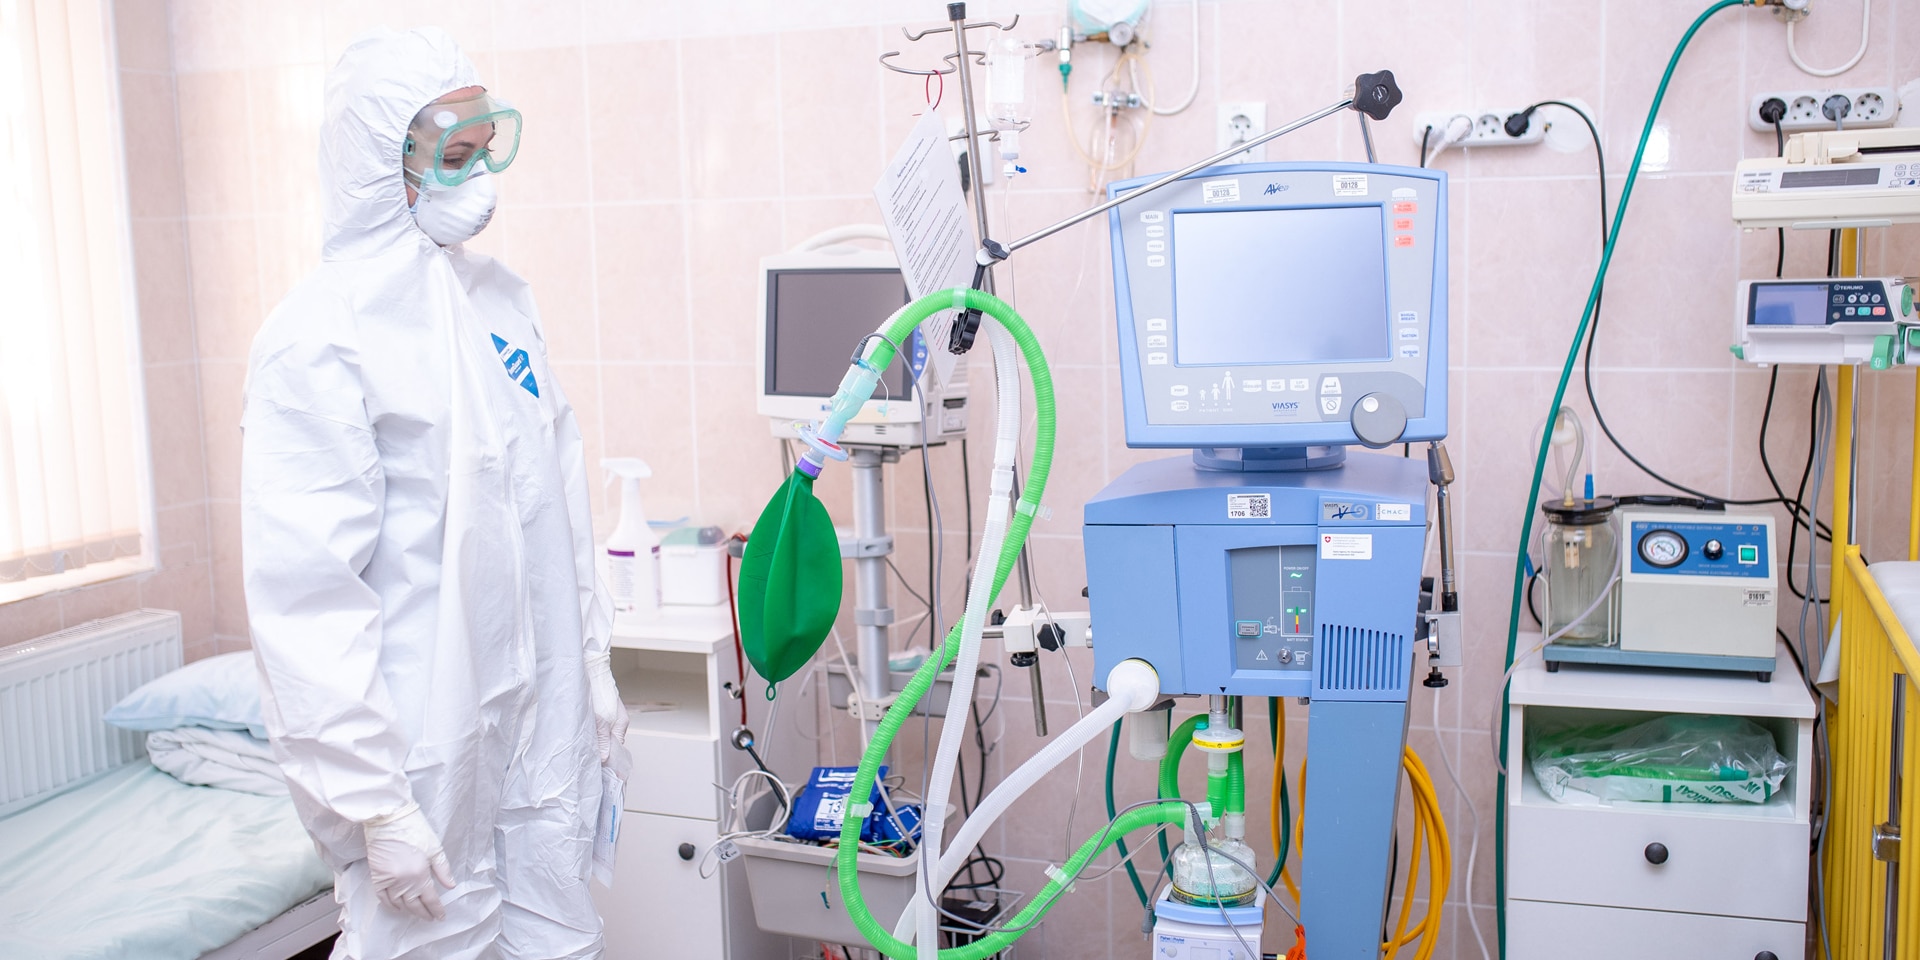 Eine Krankenschwester in Schutzkleidung steht neben einem Beatmungsgerät für die Therapie von schweren Covid-Fällen.